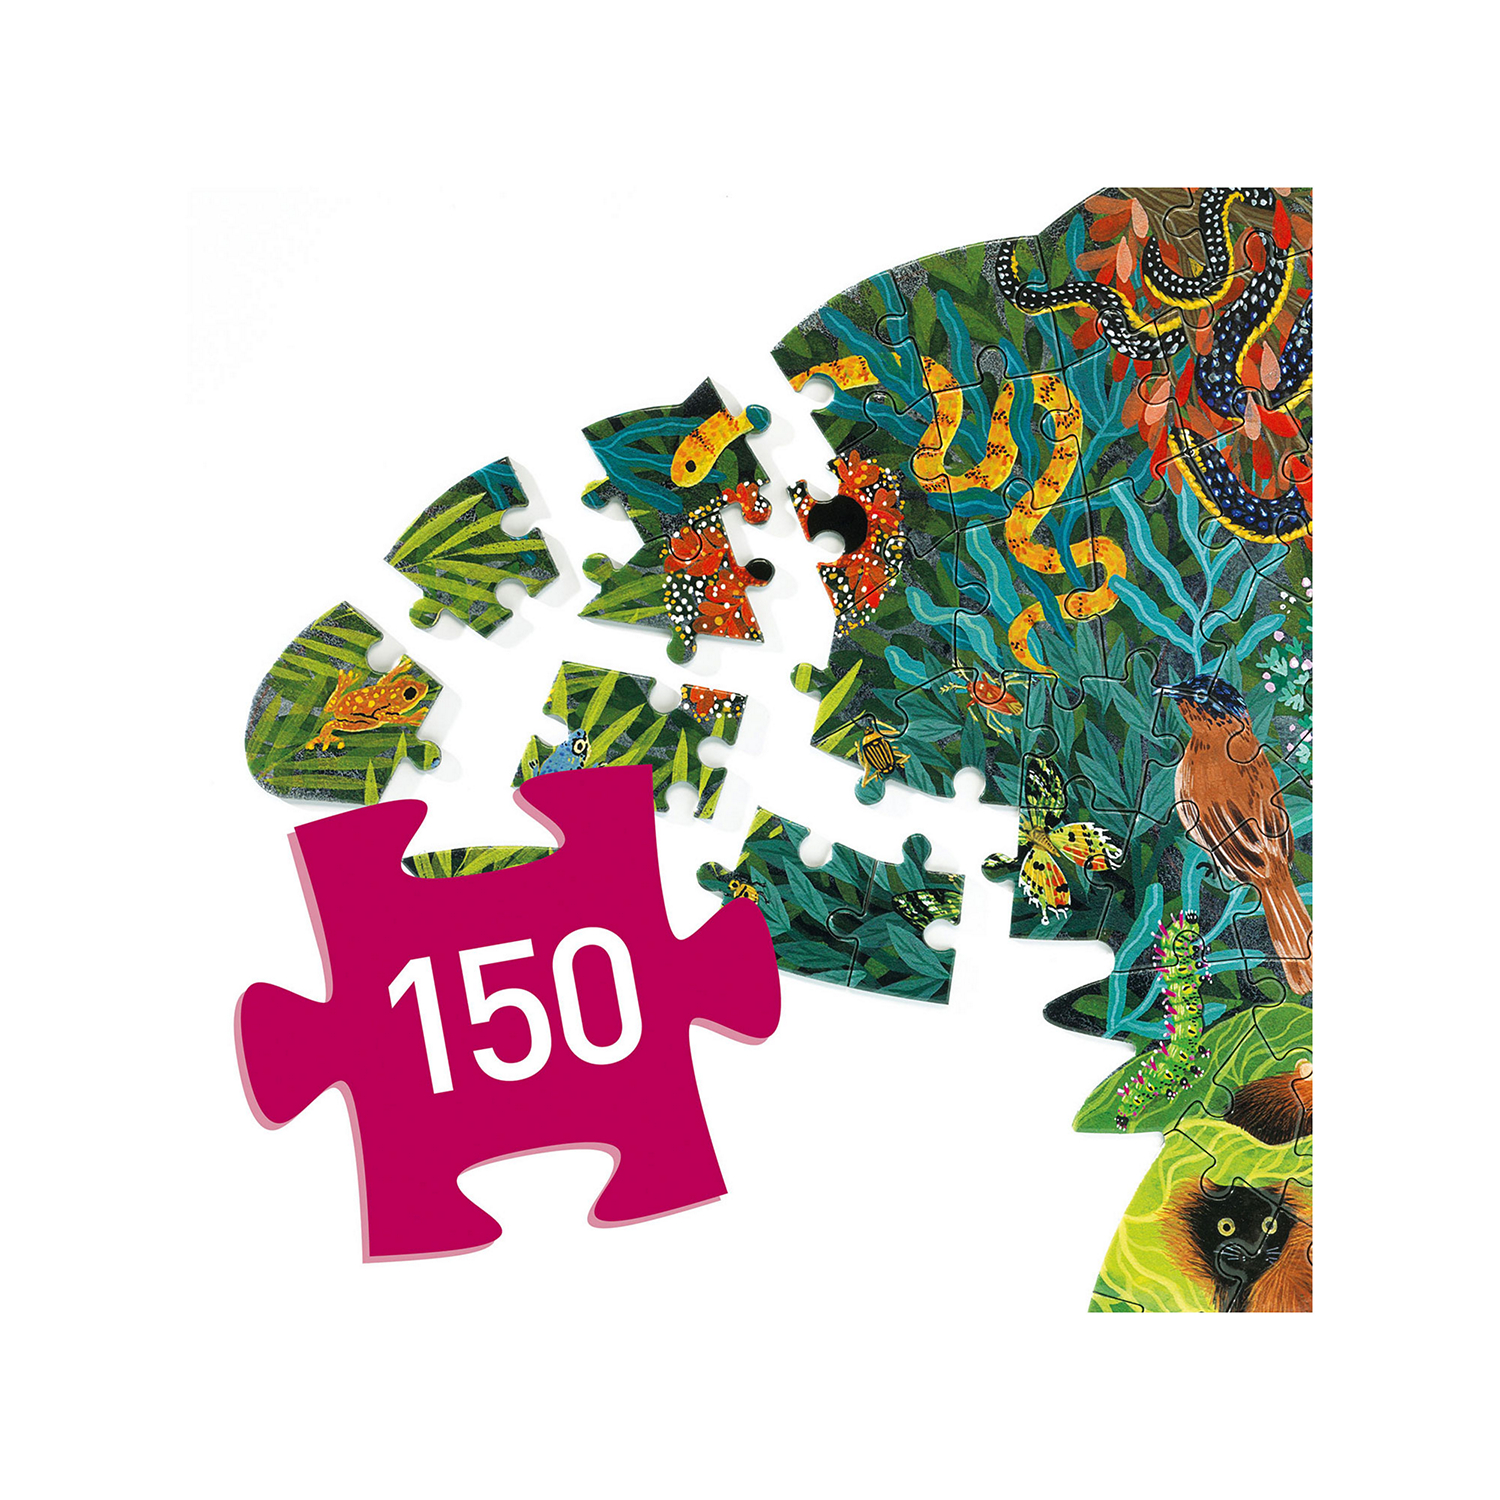 Chameleon Puzzle 150 Pieces